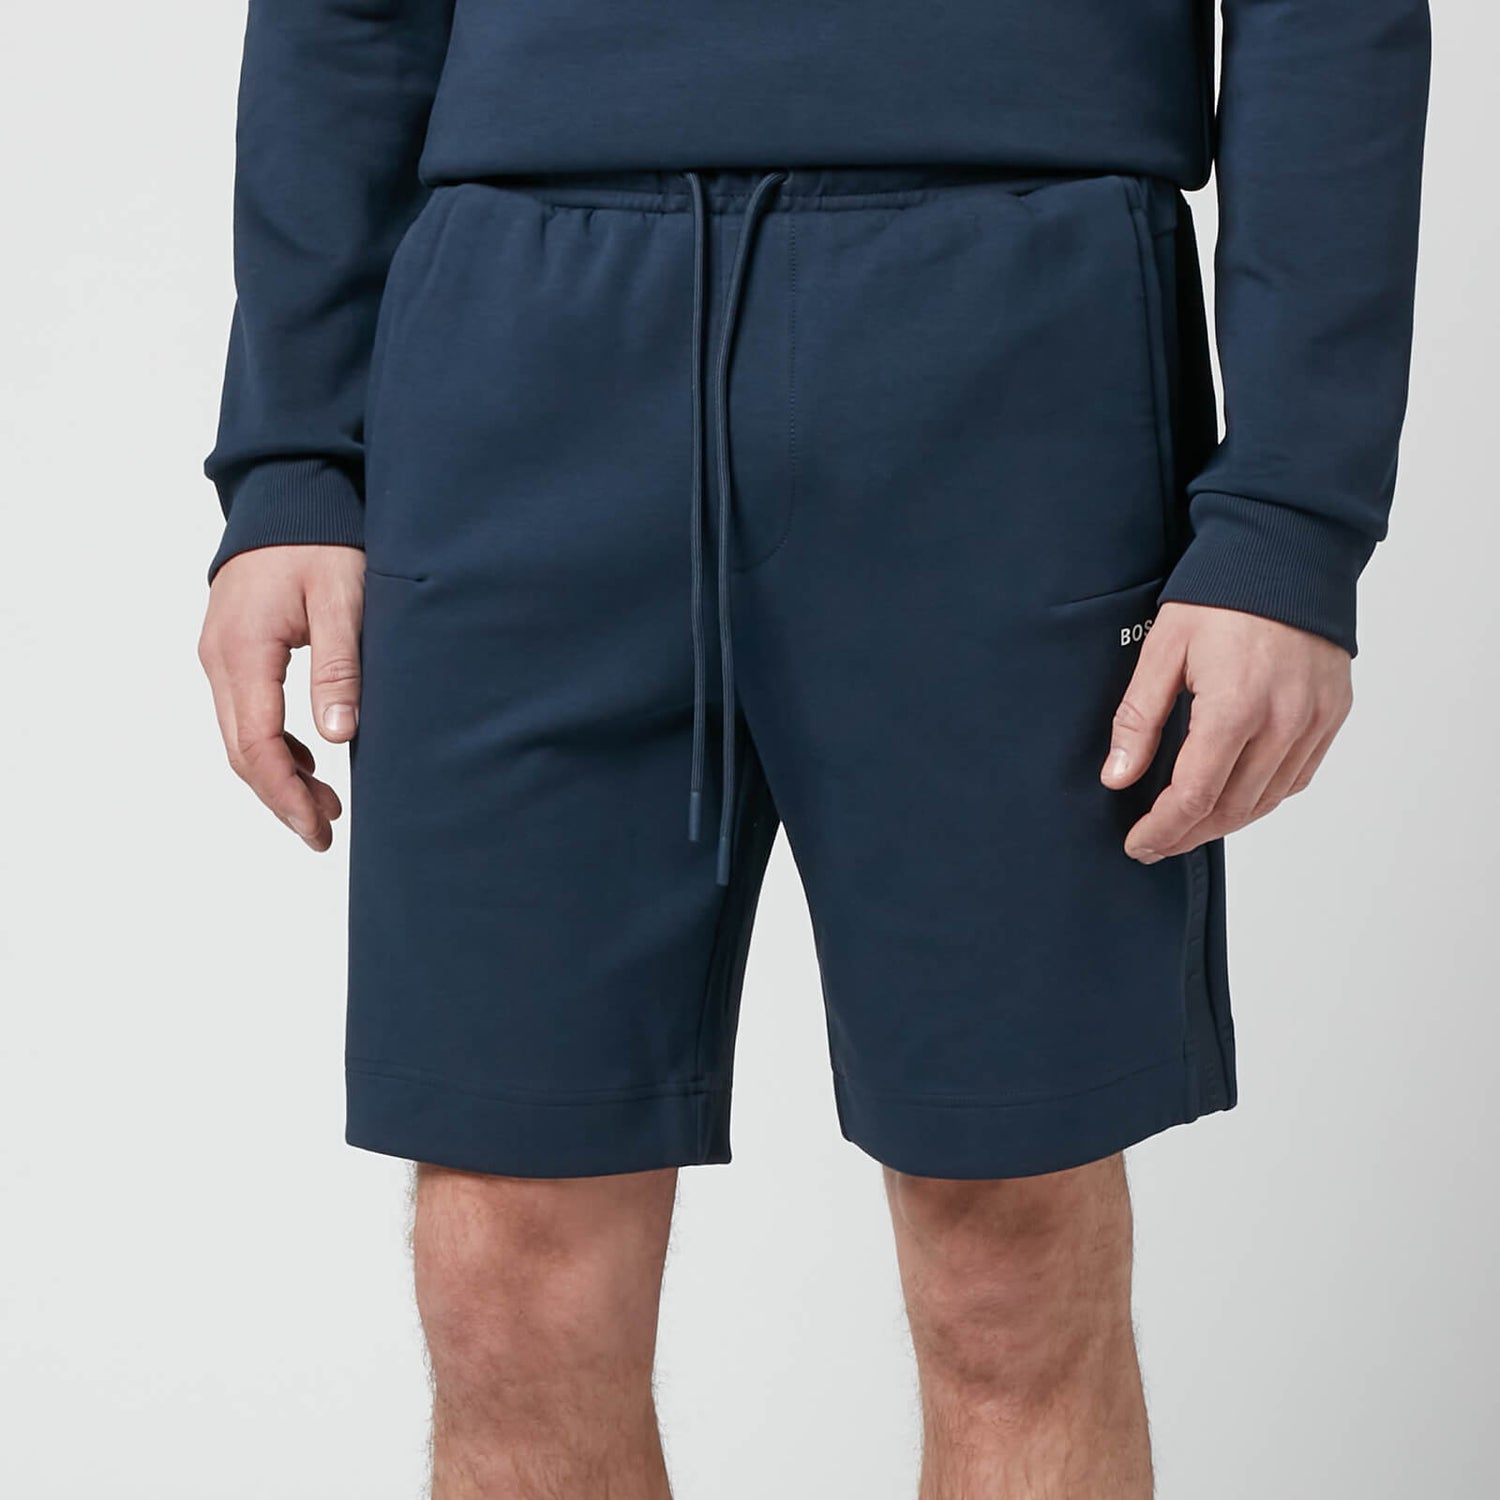 BOSS Athleisure Men's Headlo 1 Shorts - Navy - S